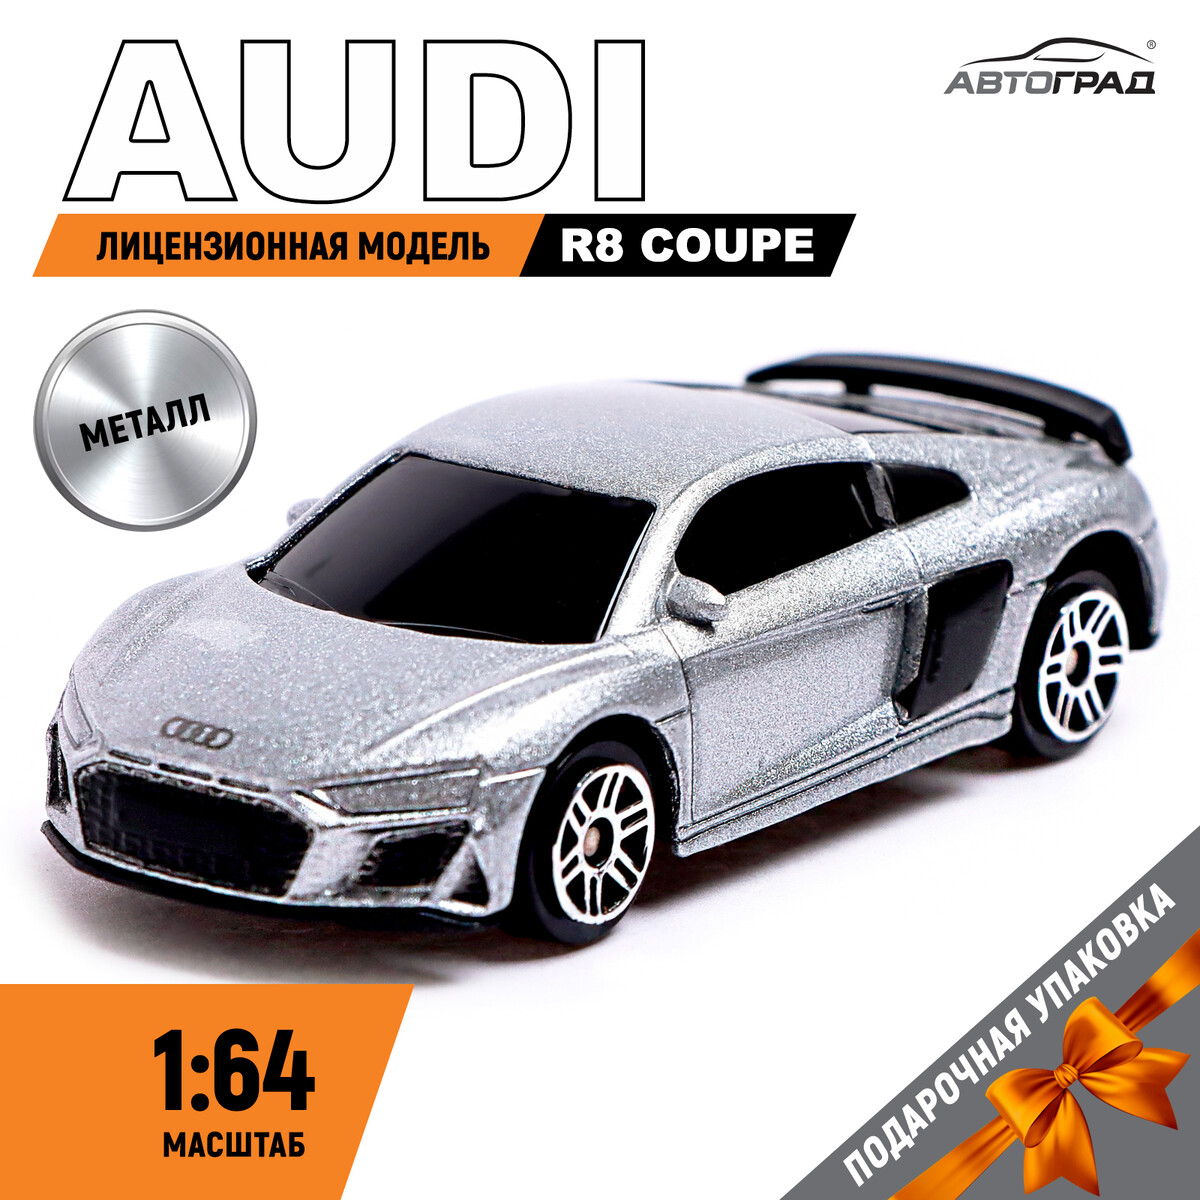 Машина металлическая audi r8 coupe, 1:64, цвет серебро